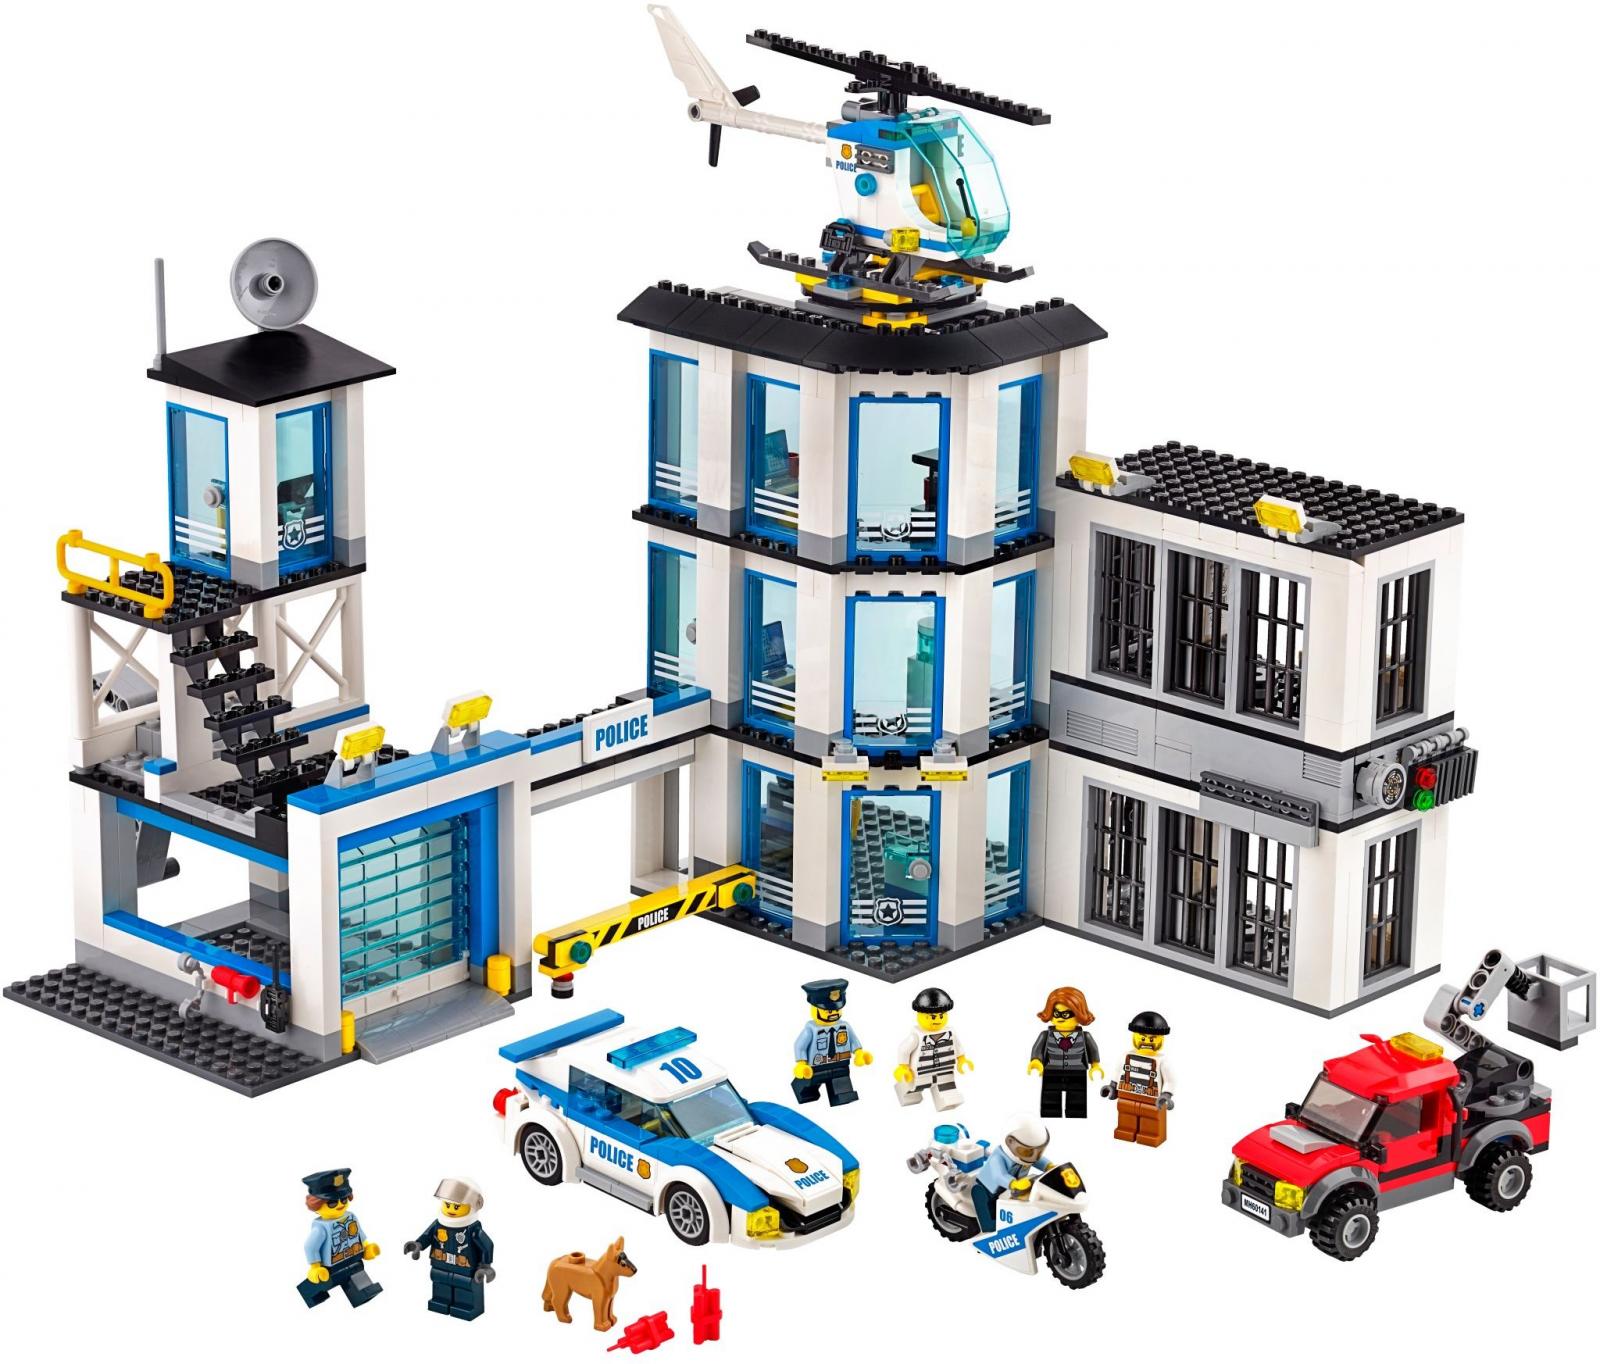 LEGO City 60141